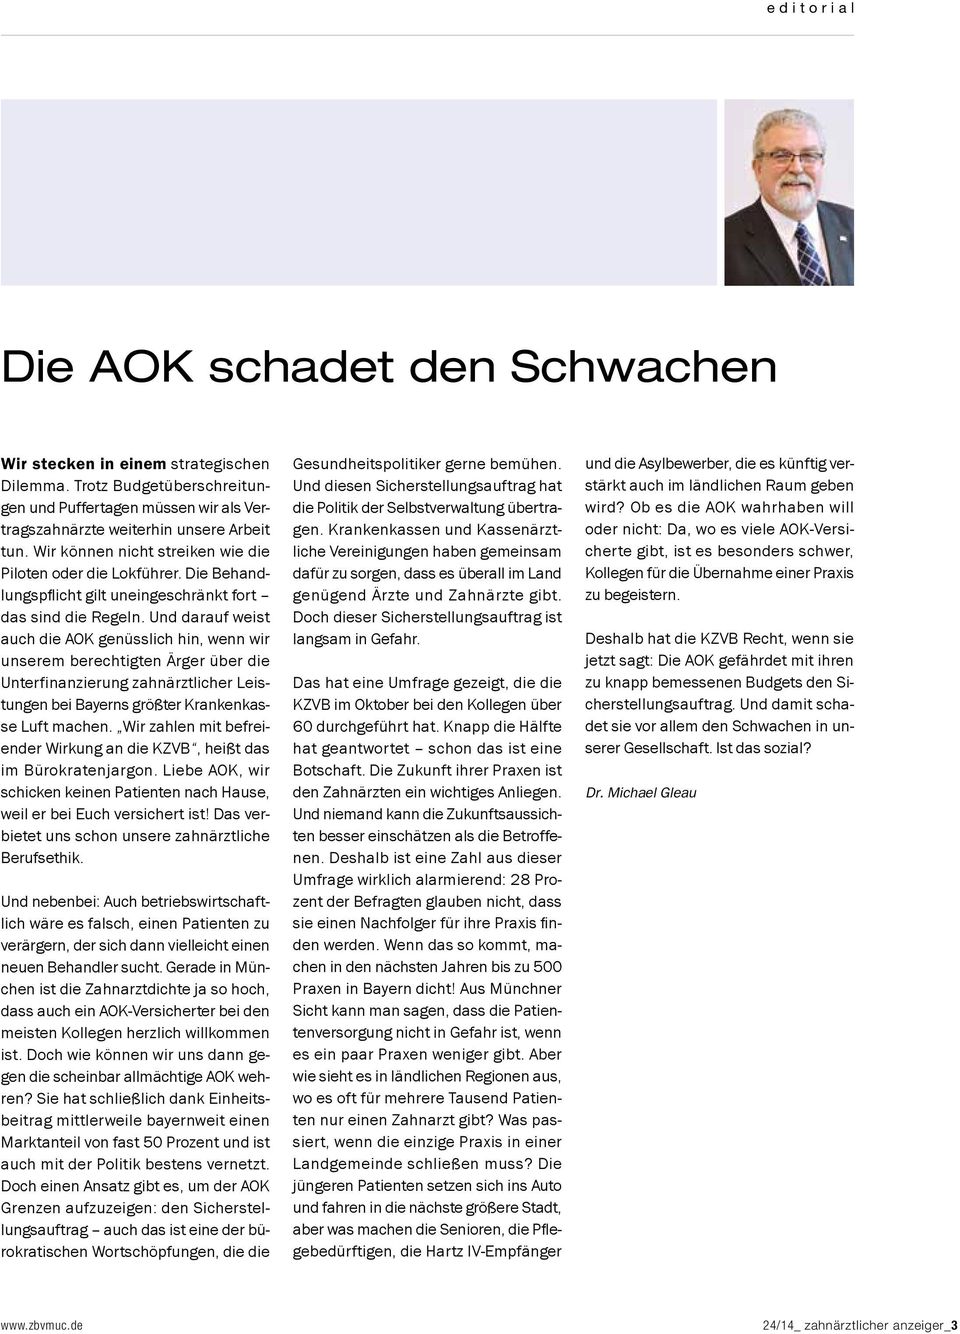 Und darauf weist auch die AOK genüsslich hin, wenn wir unserem berechtigten Ärger über die Unterfinanzierung zahnärztlicher Leistungen bei Bayerns größter Krankenkasse Luft machen.